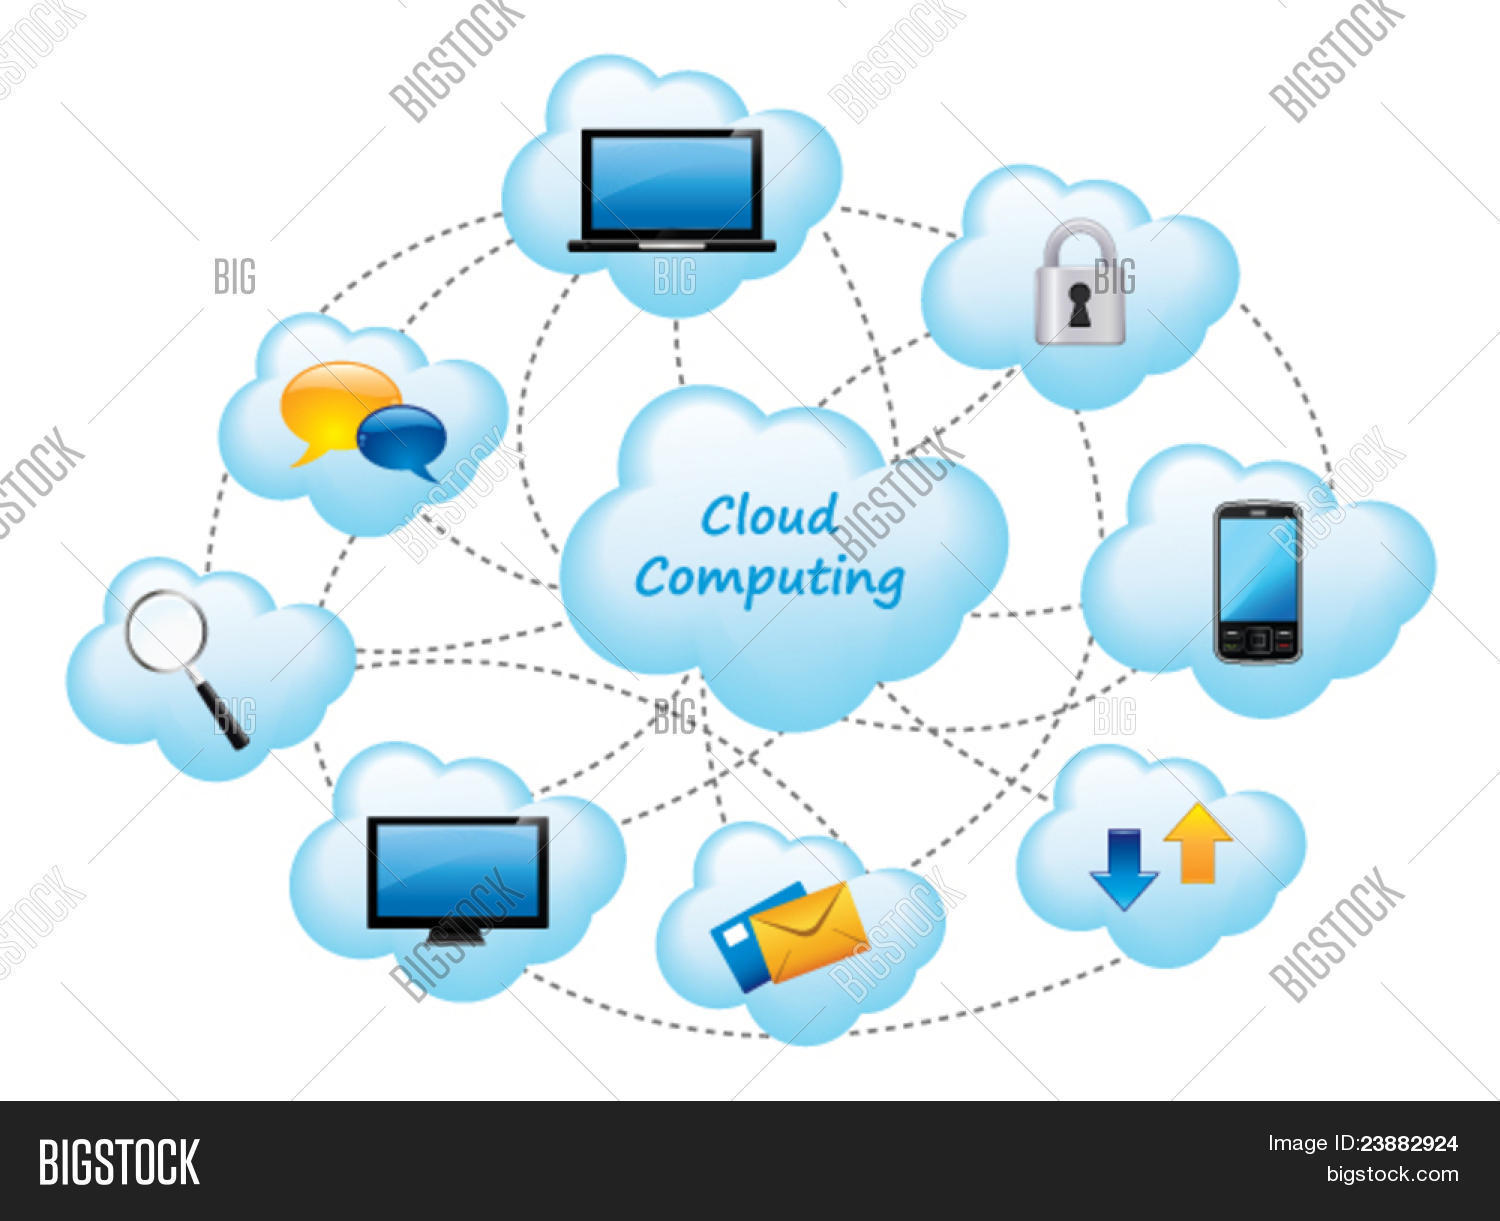 Cloud applications. Облачные технологии. Облачные вычисления. Программное обеспечение для облачных технологий. Облачные хранилища данных.